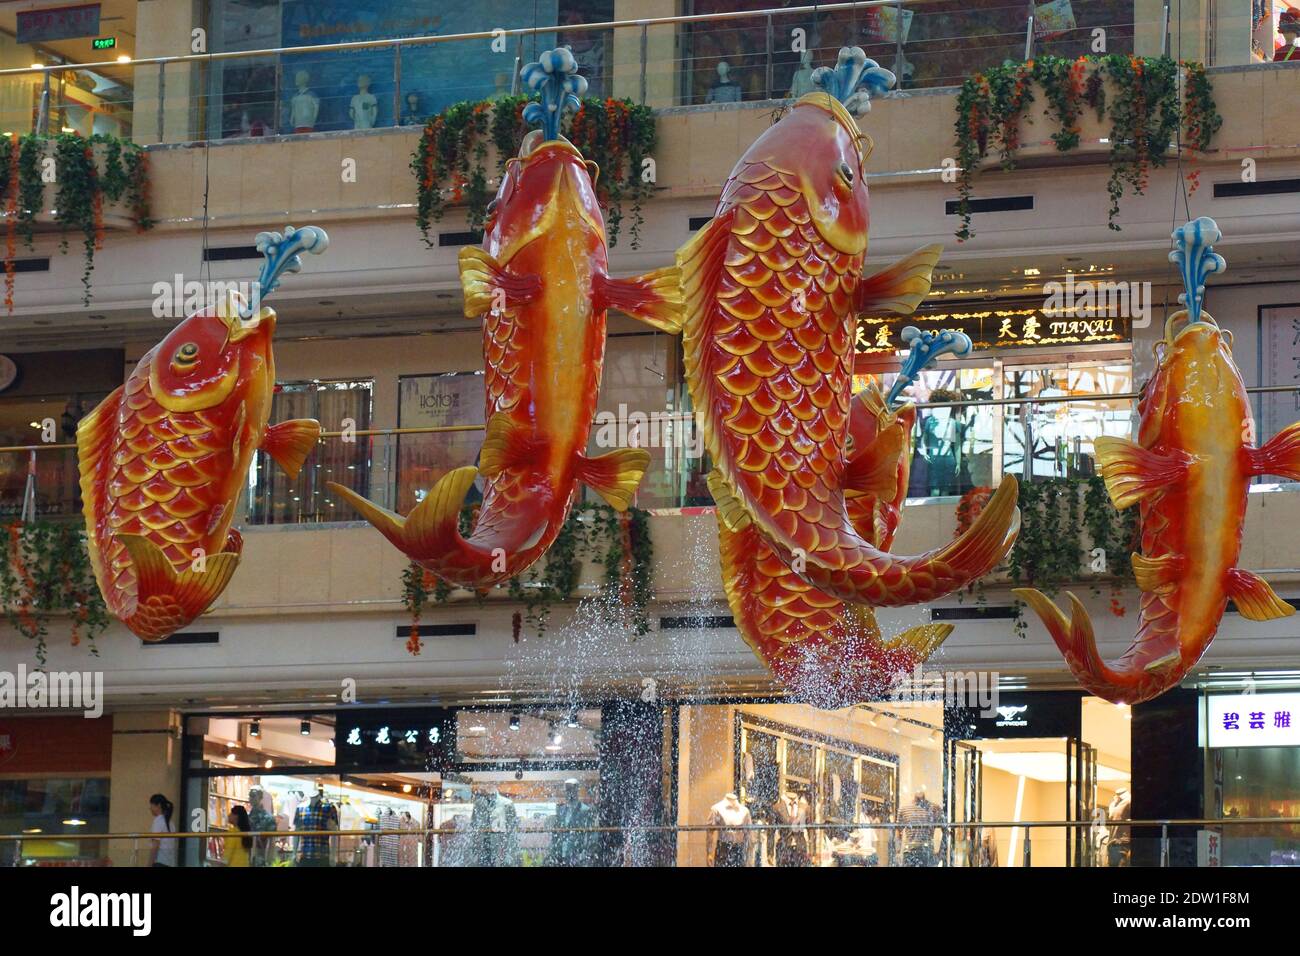 Einkaufszentrum in Anshan. Riesige Goldfische sind die Dekoration des Einkaufszentrums. Anshan, Provinz Liaoning, China, Asien. Stockfoto